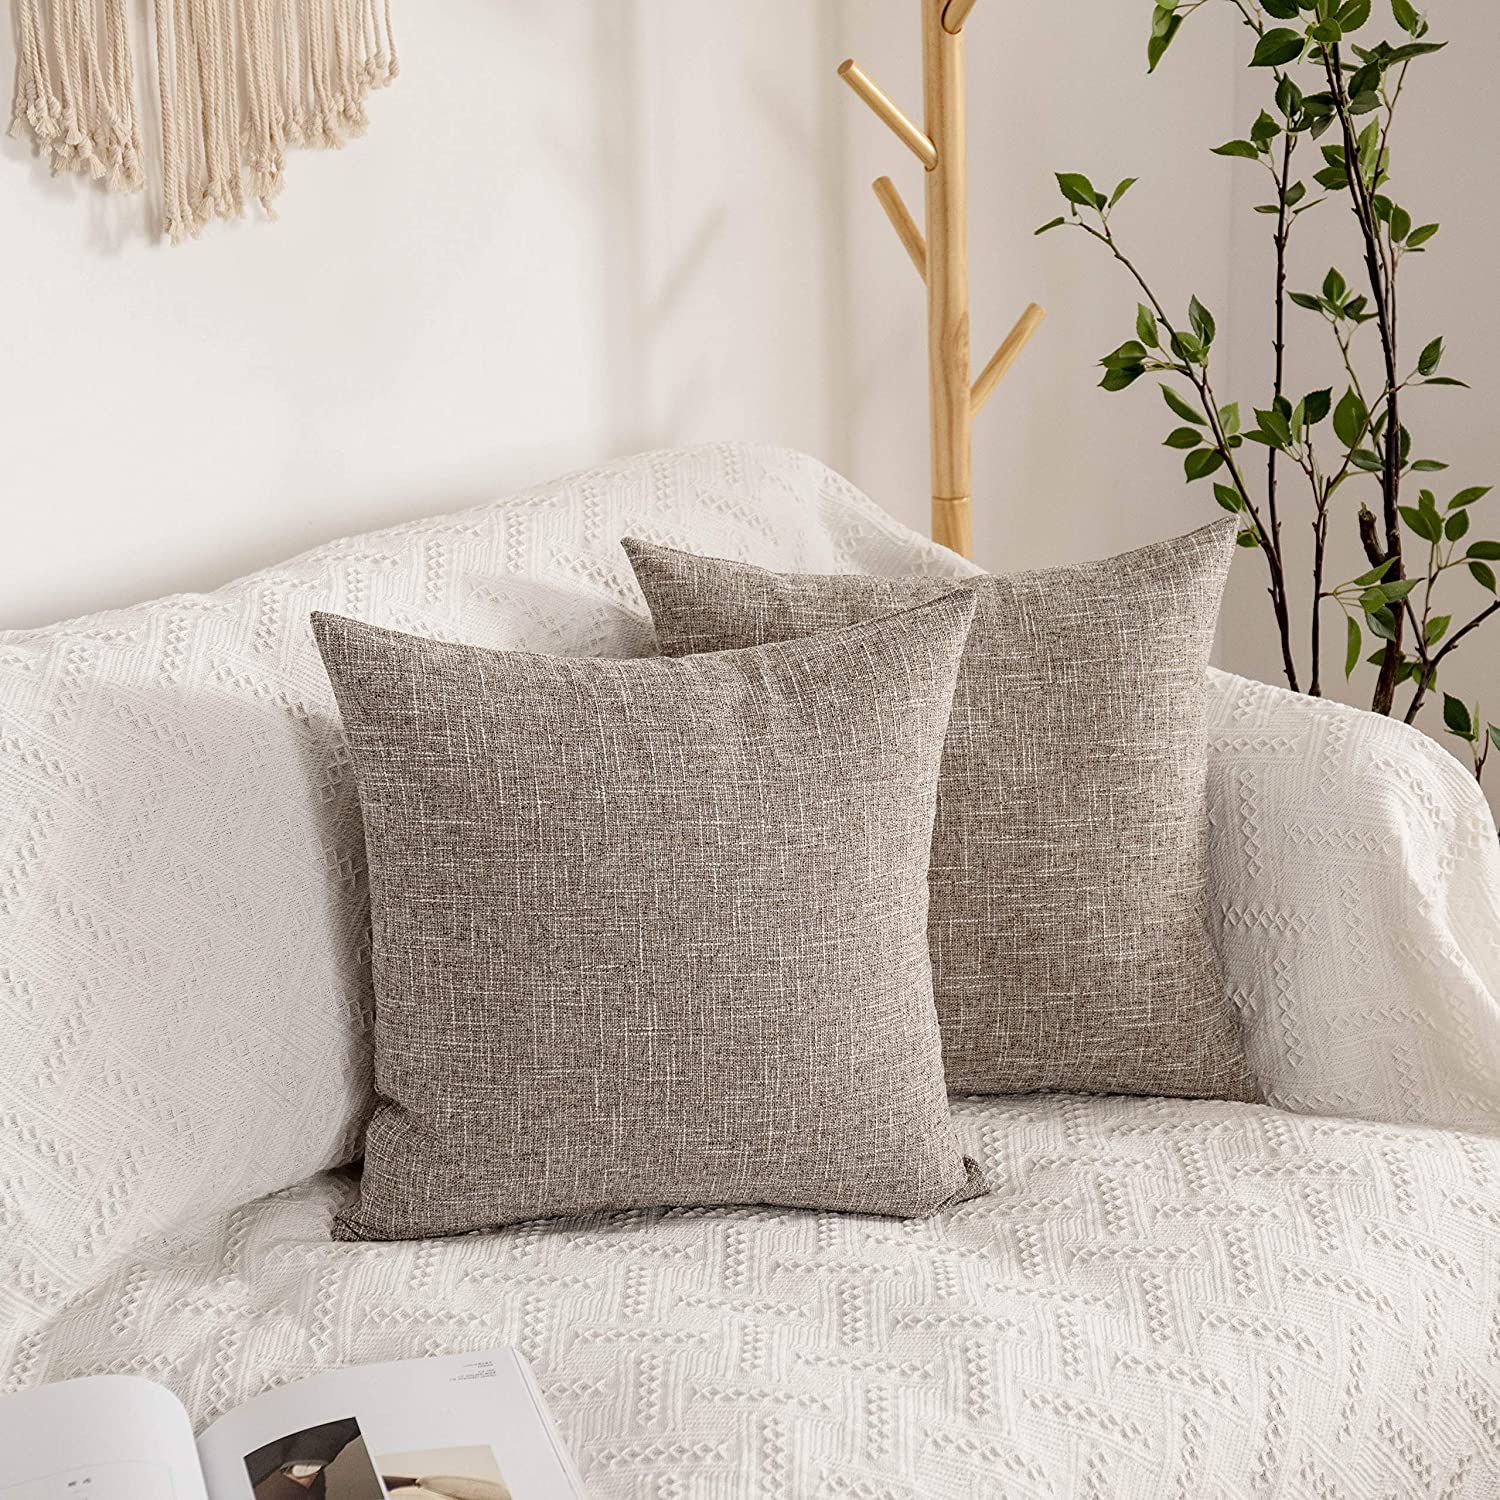 pillows - bed pillows - throw pillows - gray tones